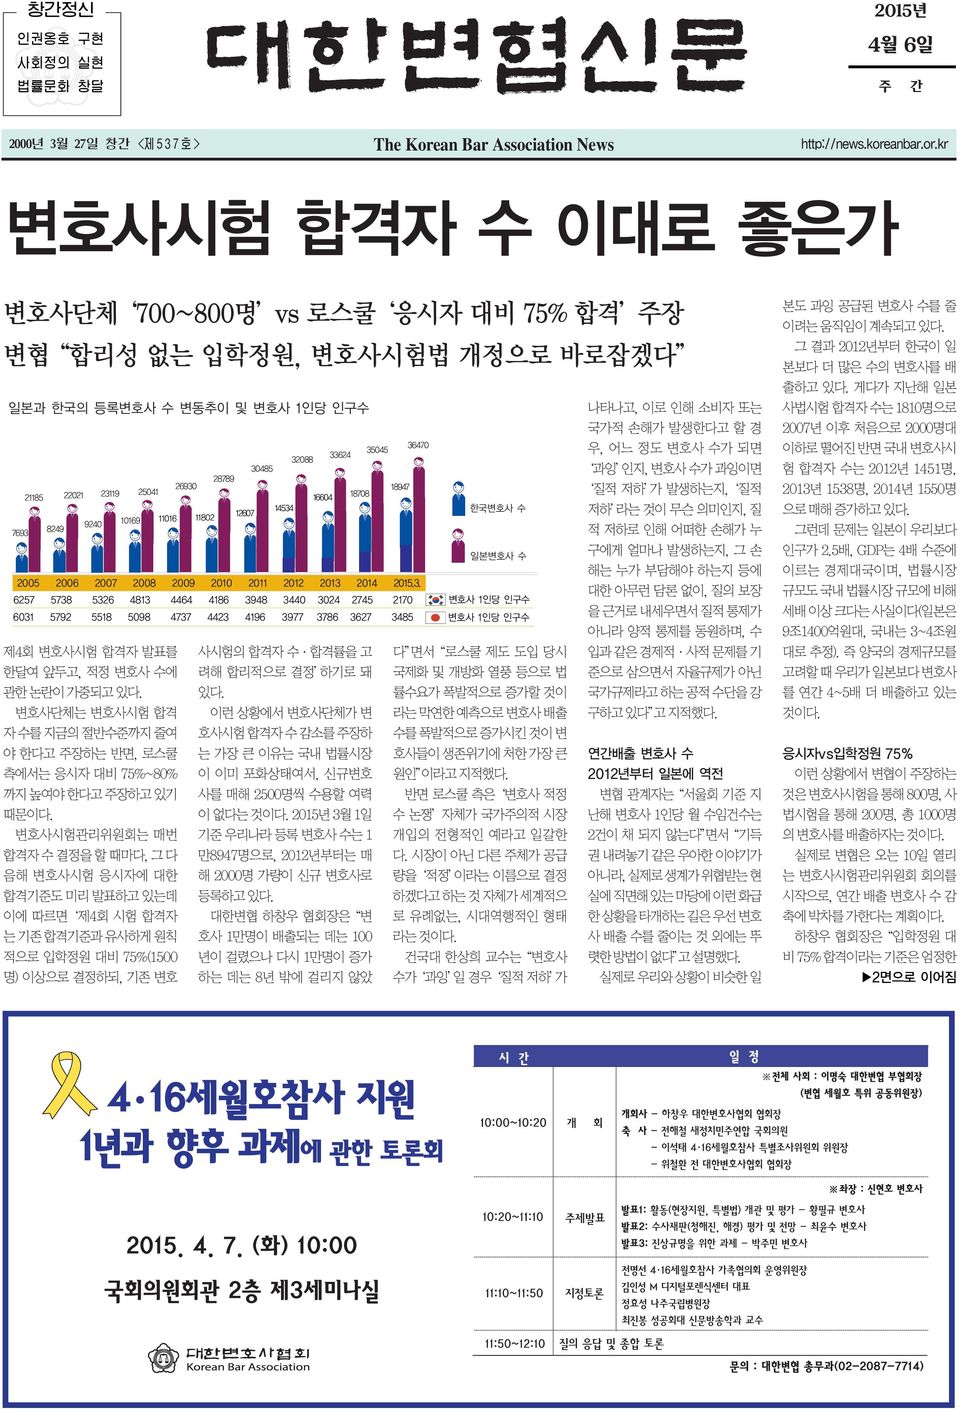 그 결 2012년부터 한국이 일 본보다 더 많은 수의 변호사를 배 출하고 있다.